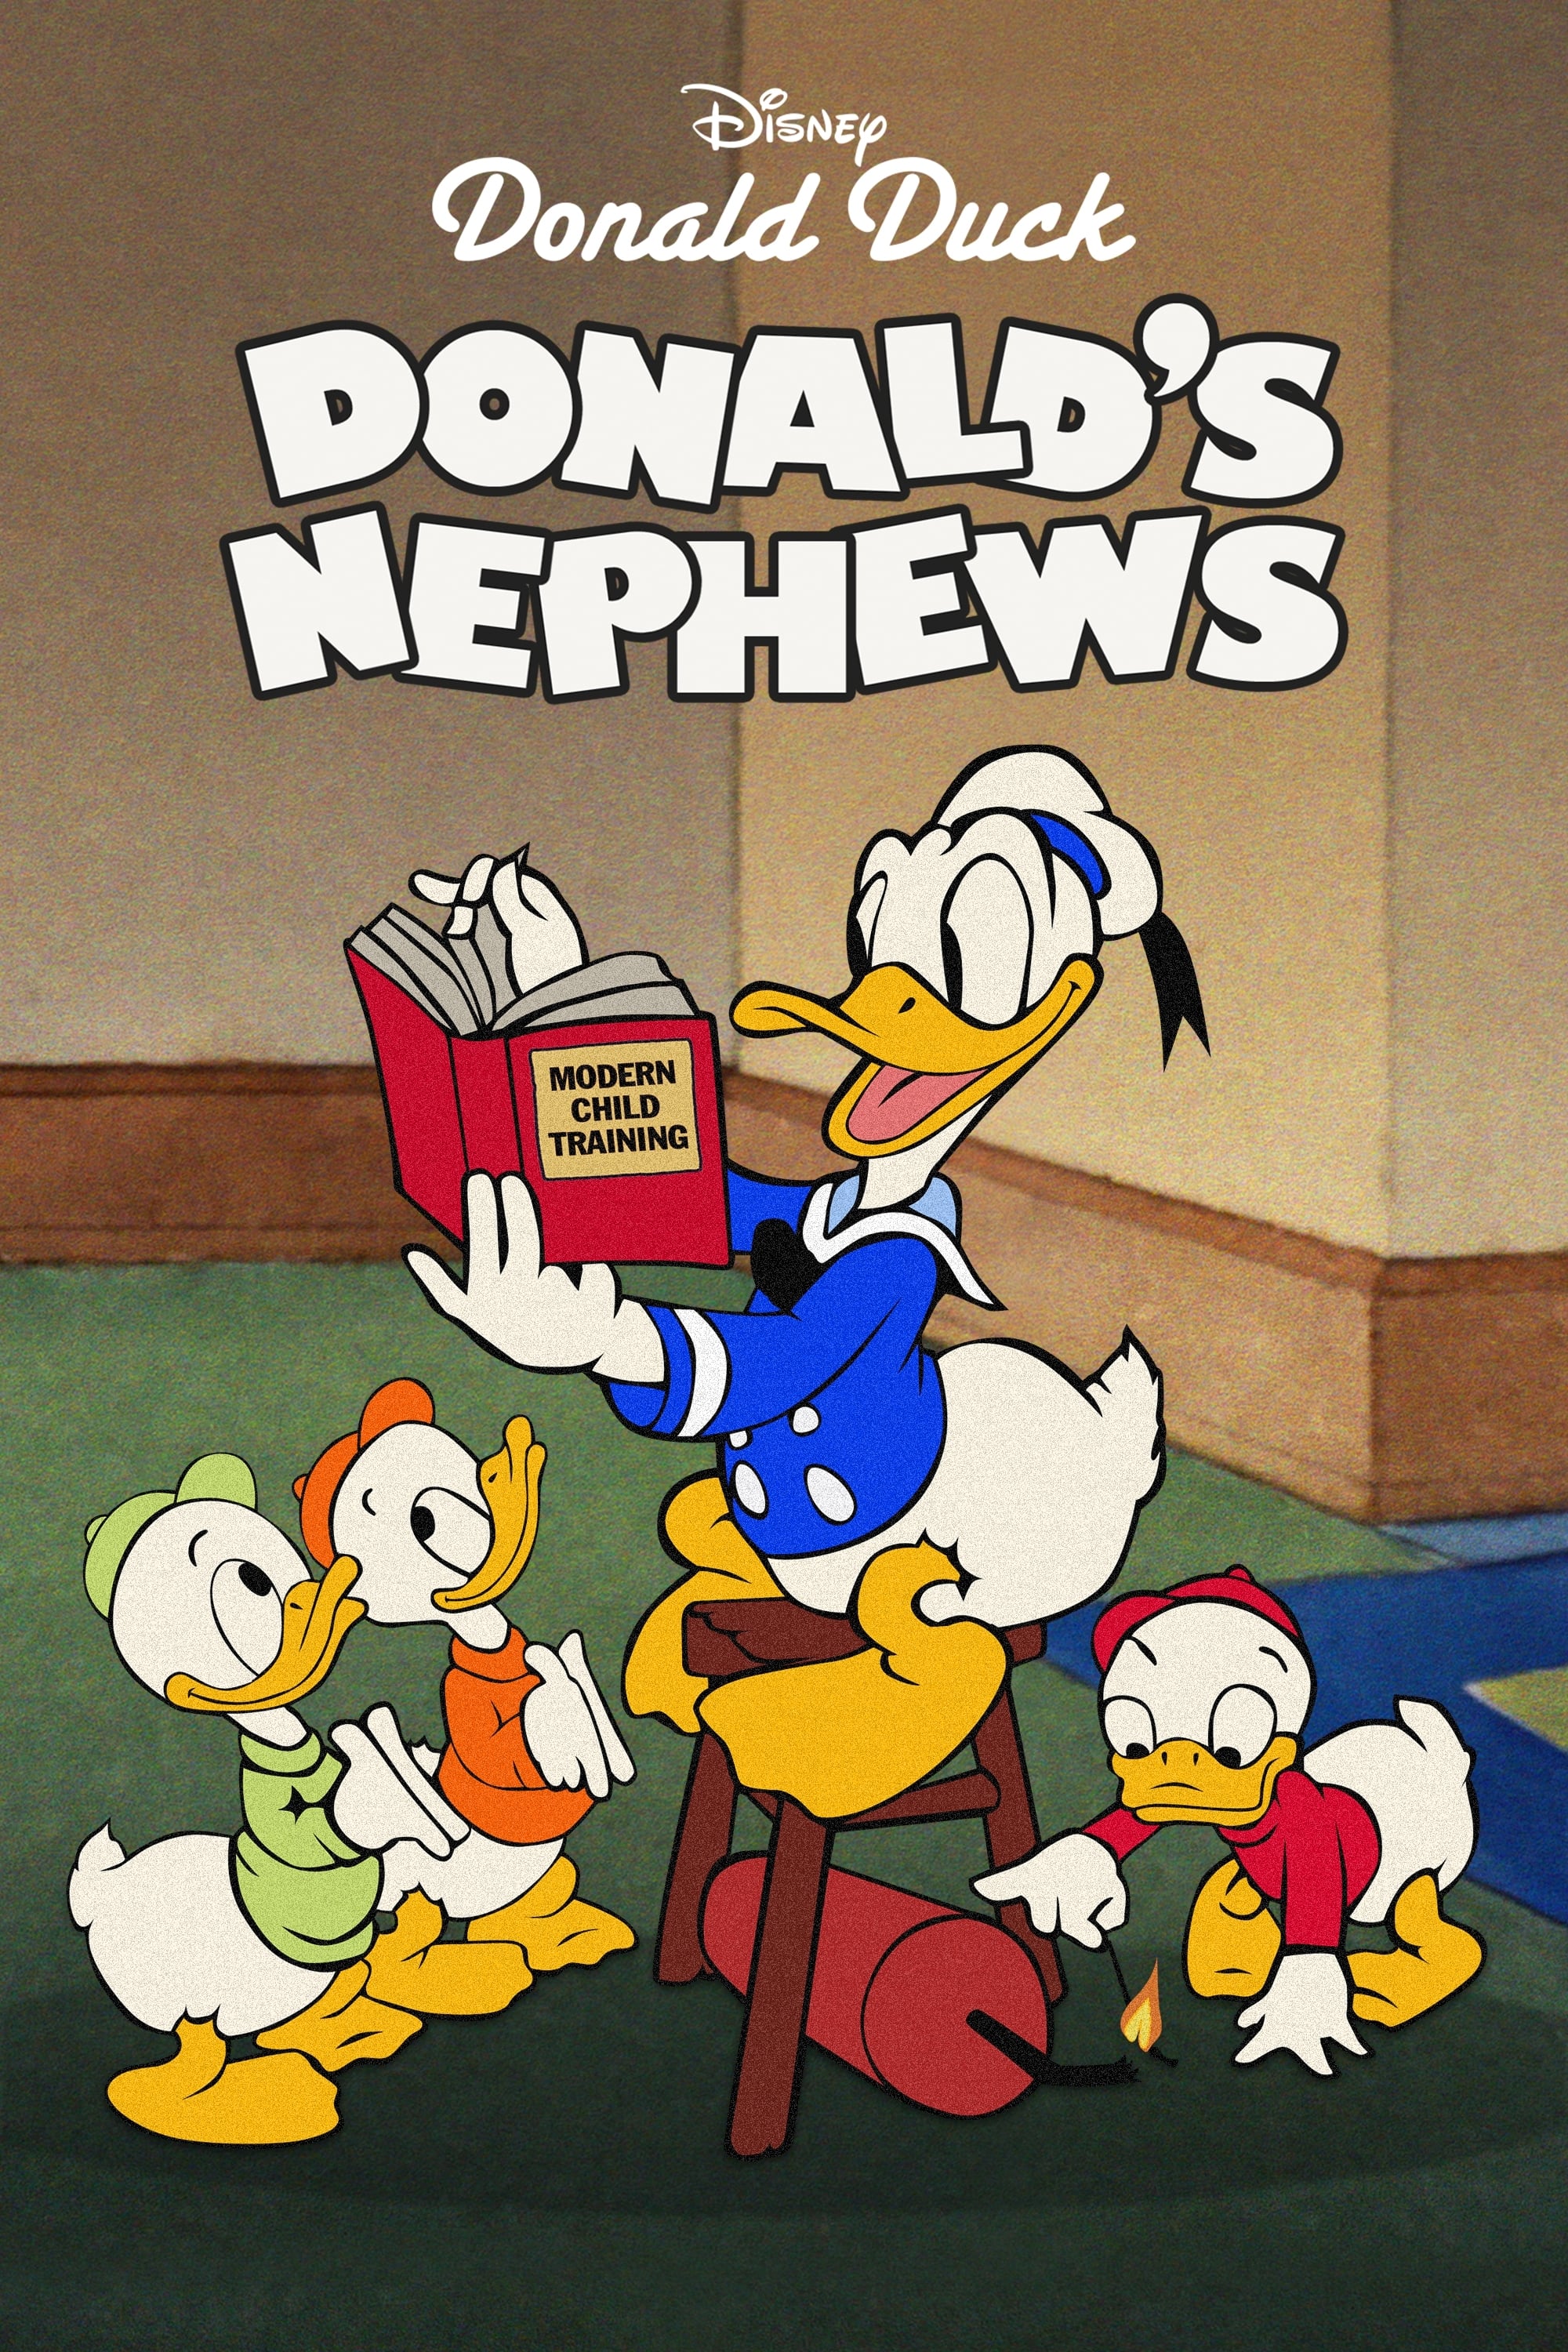 El Pato Donald: Los sobrinos de Donald